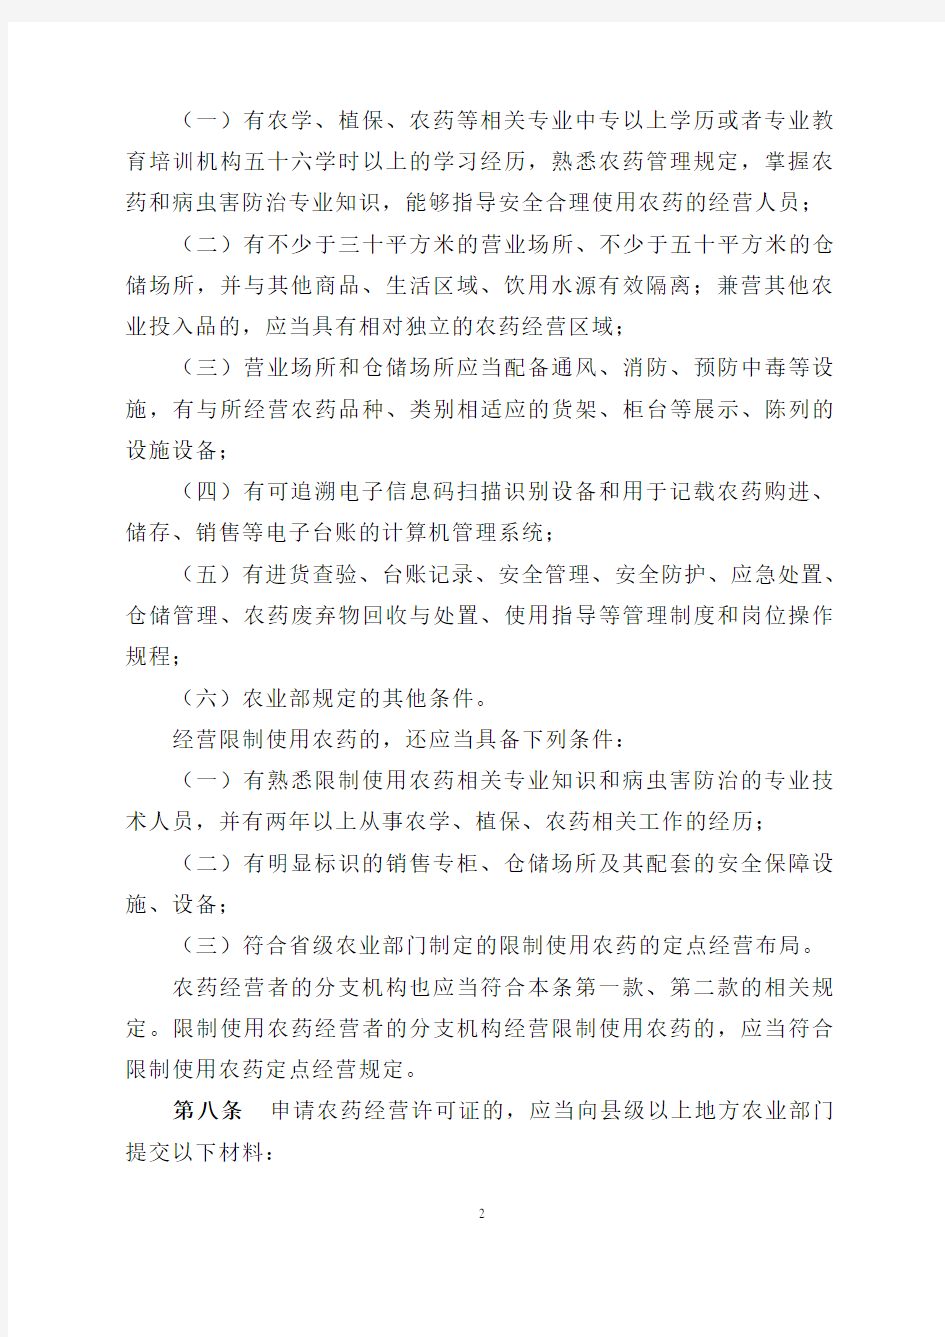 农药经营许可管理办法   中华人民共和国农业部令2017年 第5号